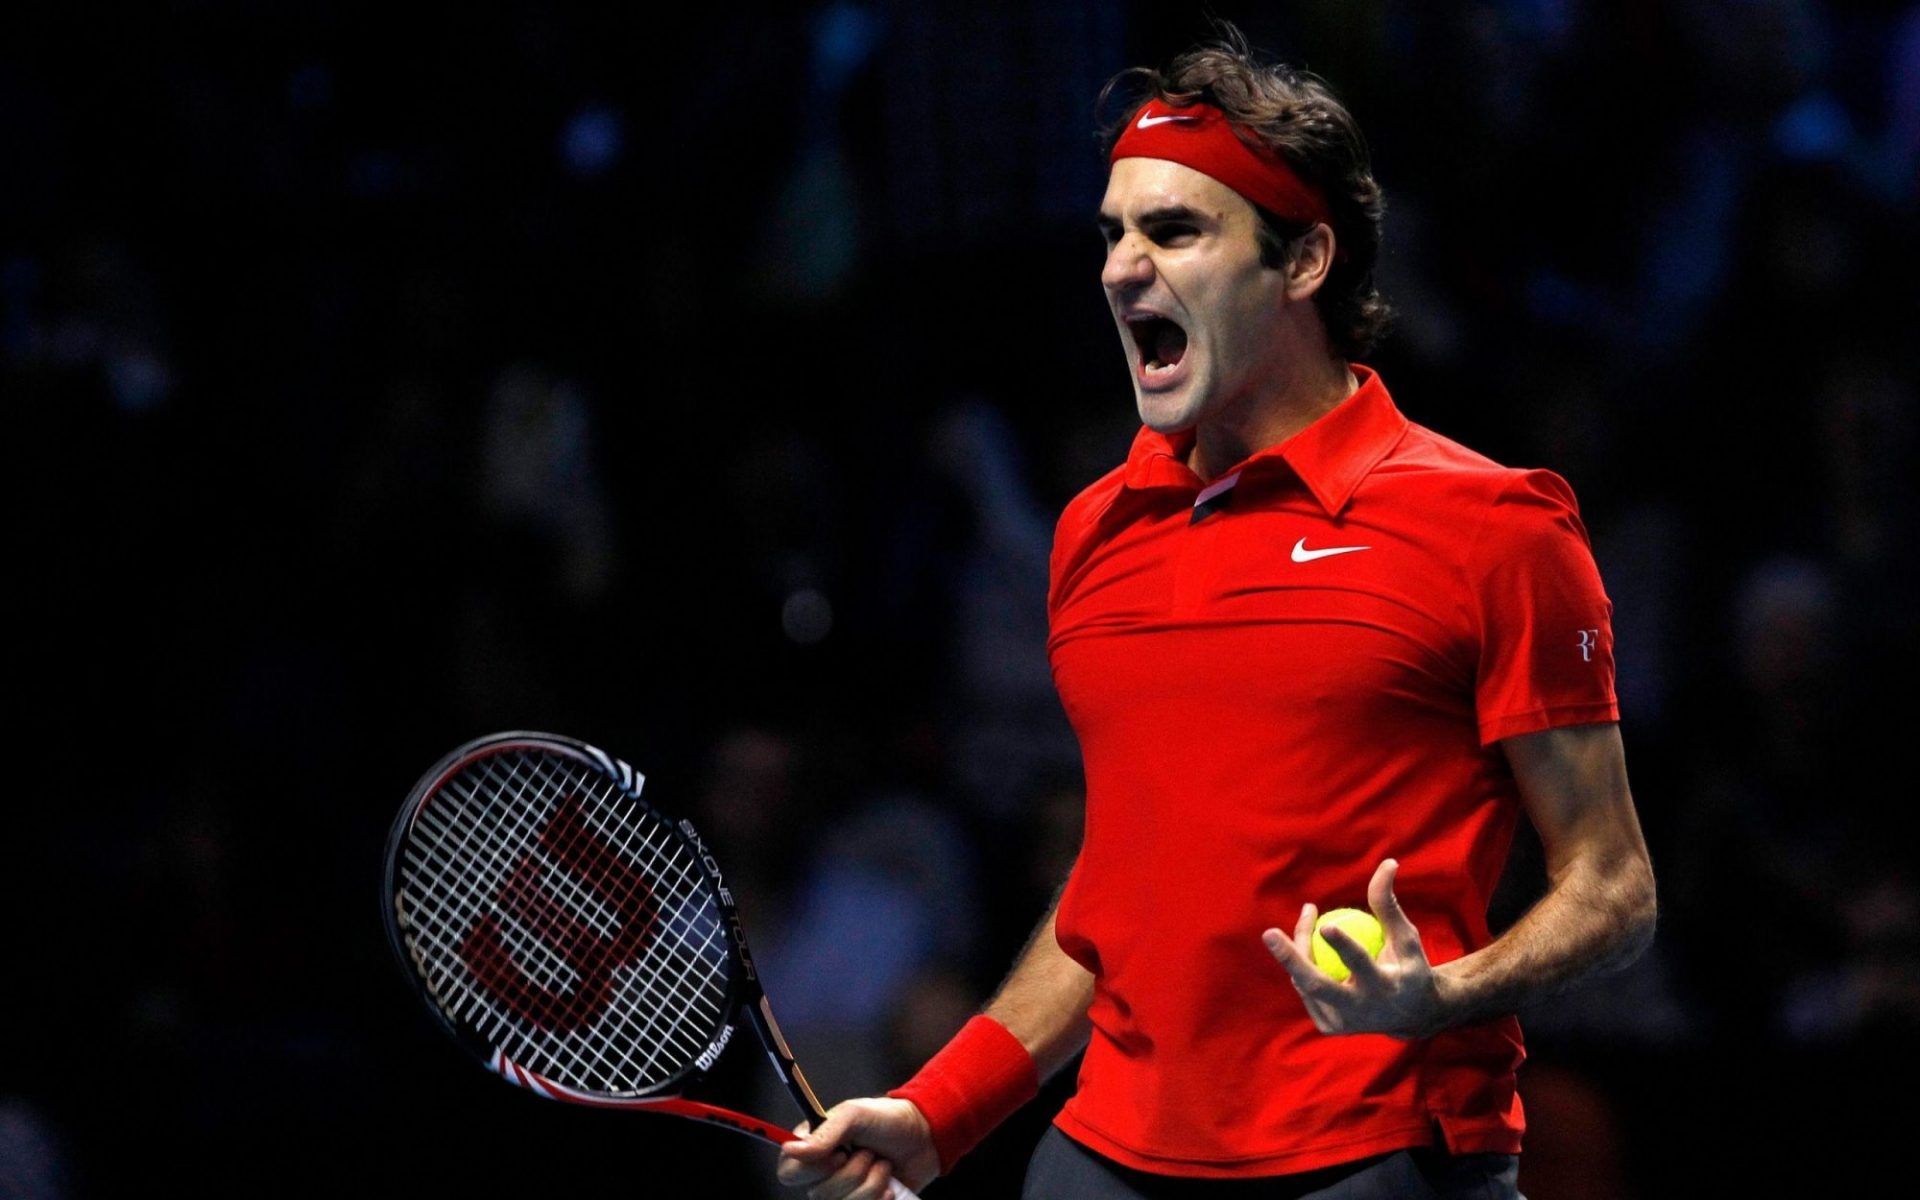 20 Time Grand Slam Champion Roger Federer